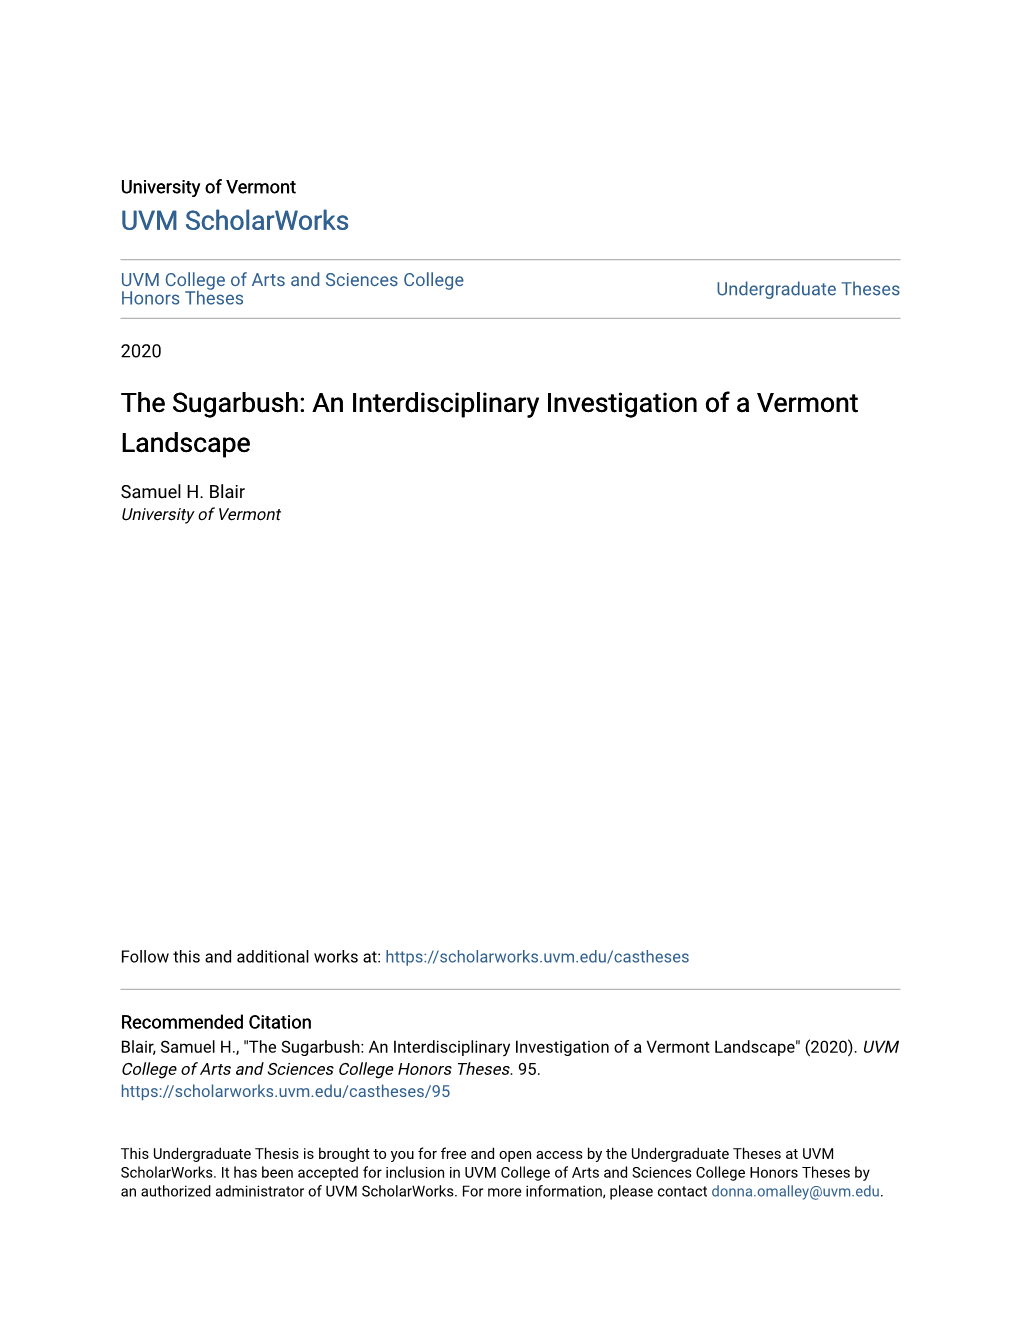 The Sugarbush: an Interdisciplinary Investigation of a Vermont Landscape